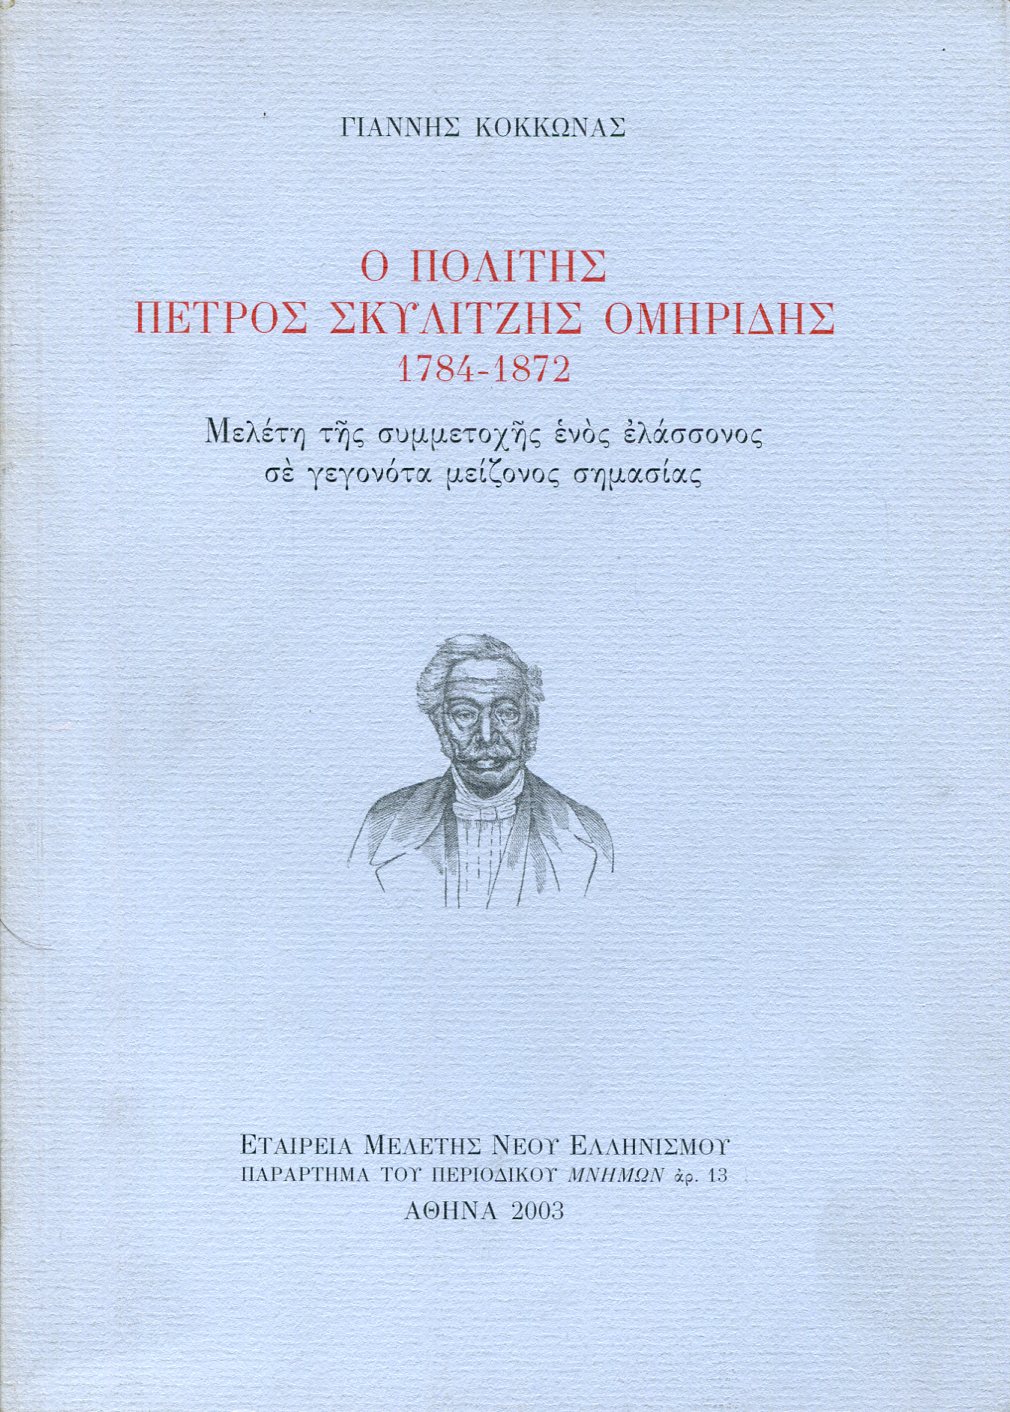 Ο ΠΟΛΙΤΗΣ ΠΕΤΡΟΣ ΣΚΥΛΙΤΖΗΣ ΟΜΗΡΙΔΗΣ 1784-1872